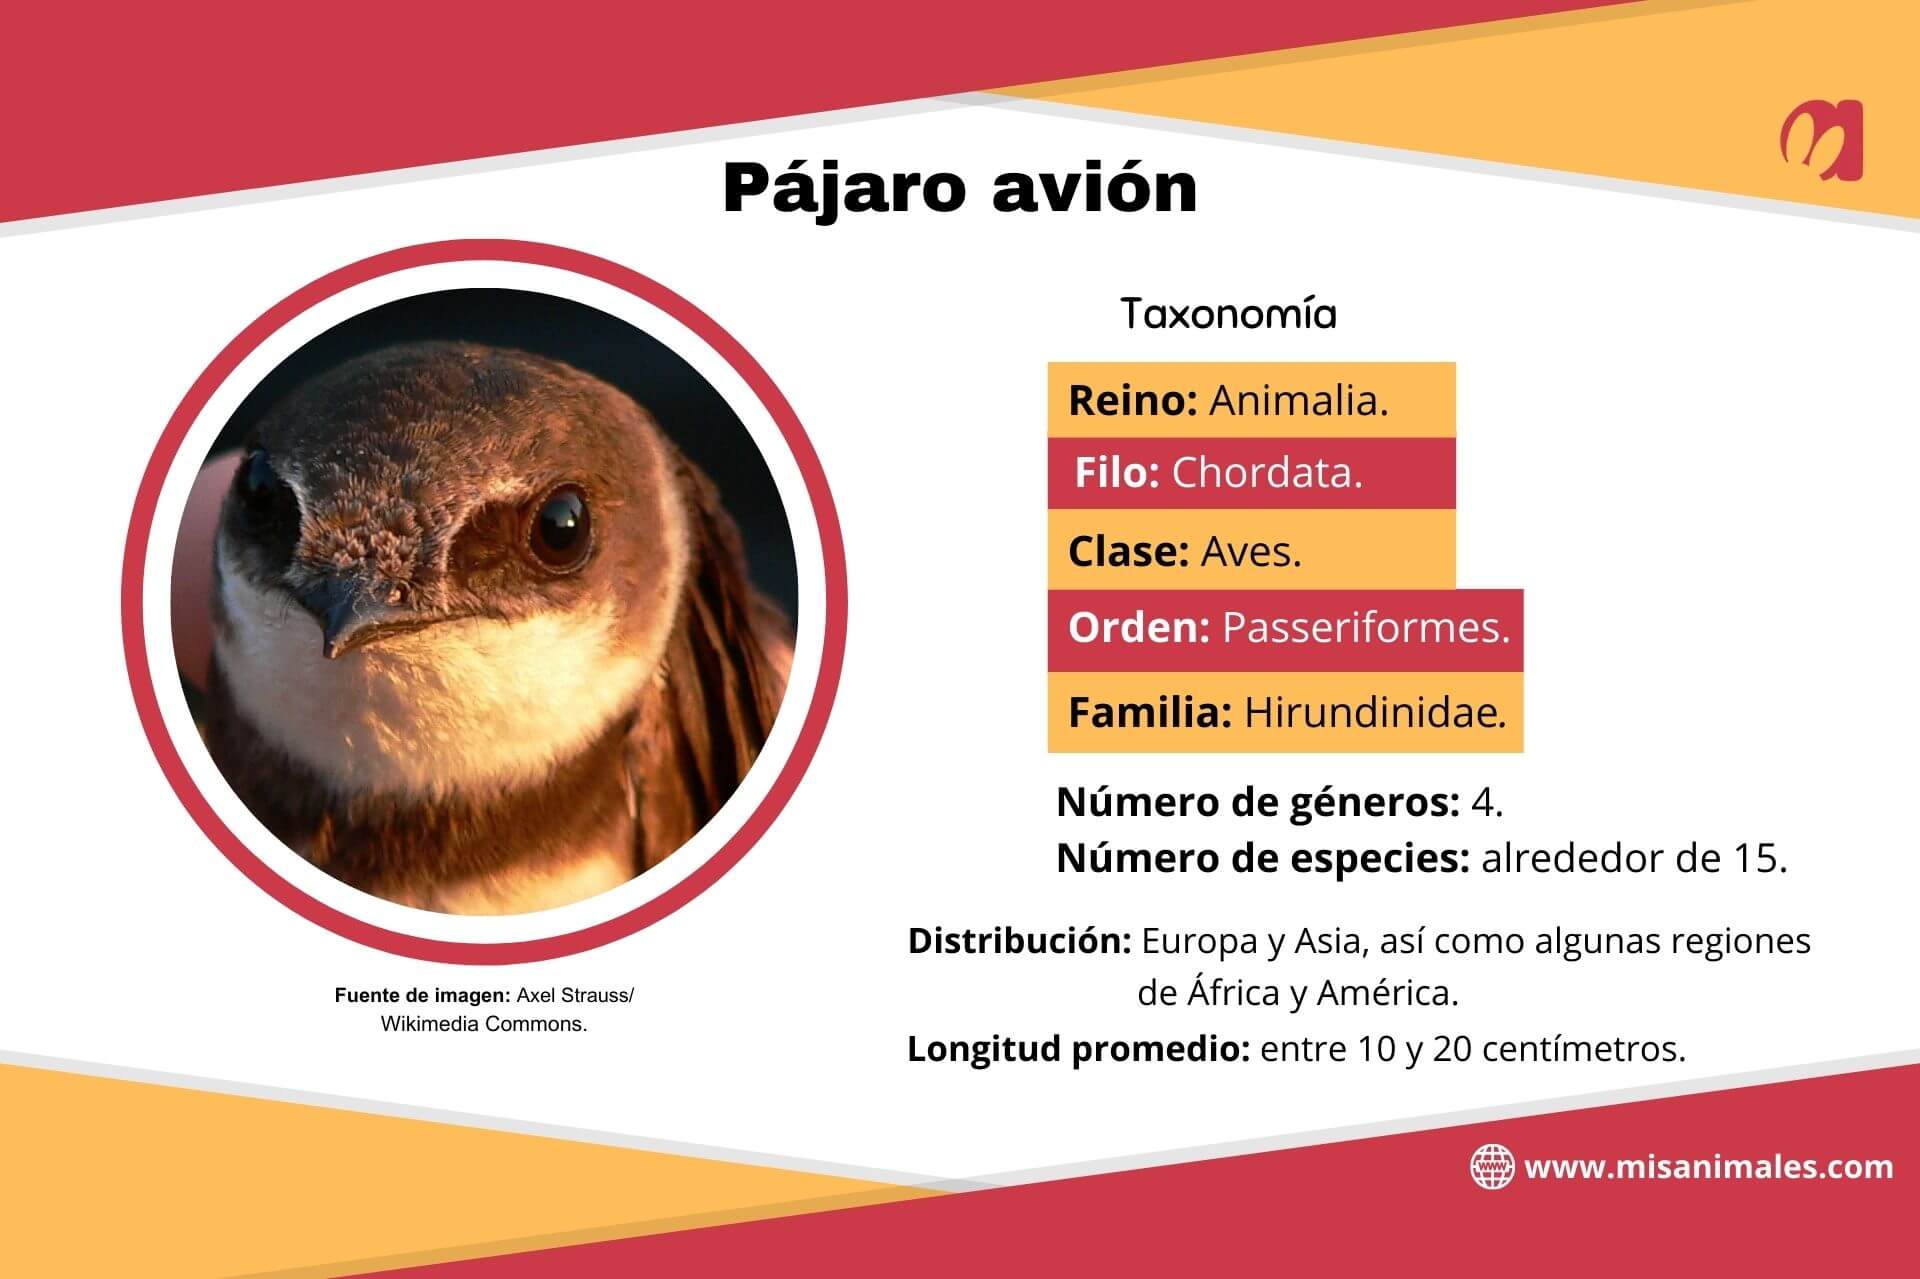 Ficha sobre la taxonomía, distribución y longitud promedio del pájaro avión. 